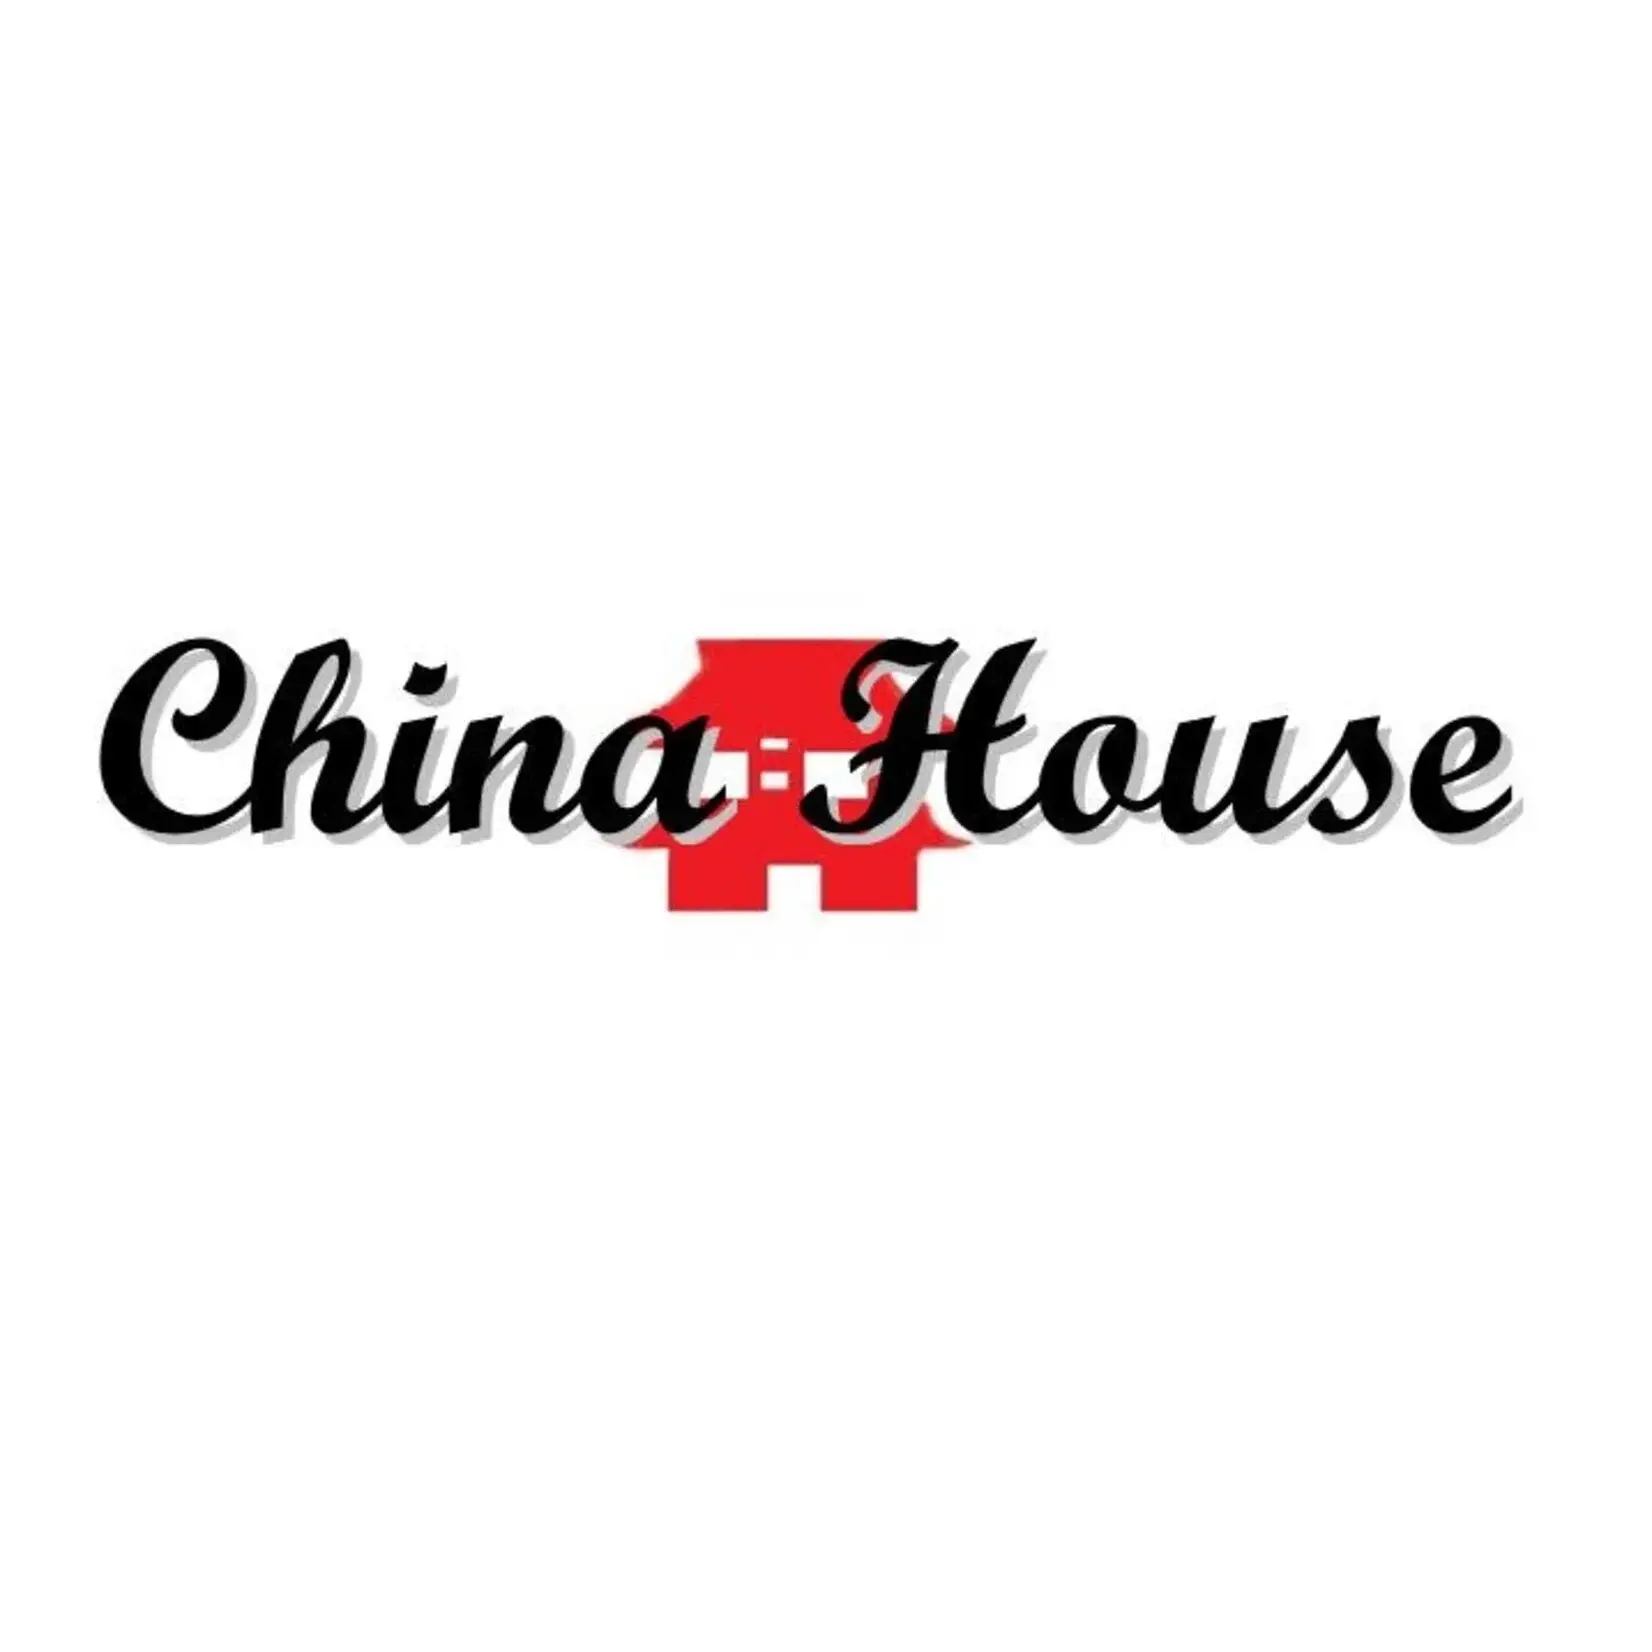 China House Hibachi & Sushi Buffet-DeKalb China House Hibachi & Sushi Buffet-DeKalb $10.00 Dining Certificate